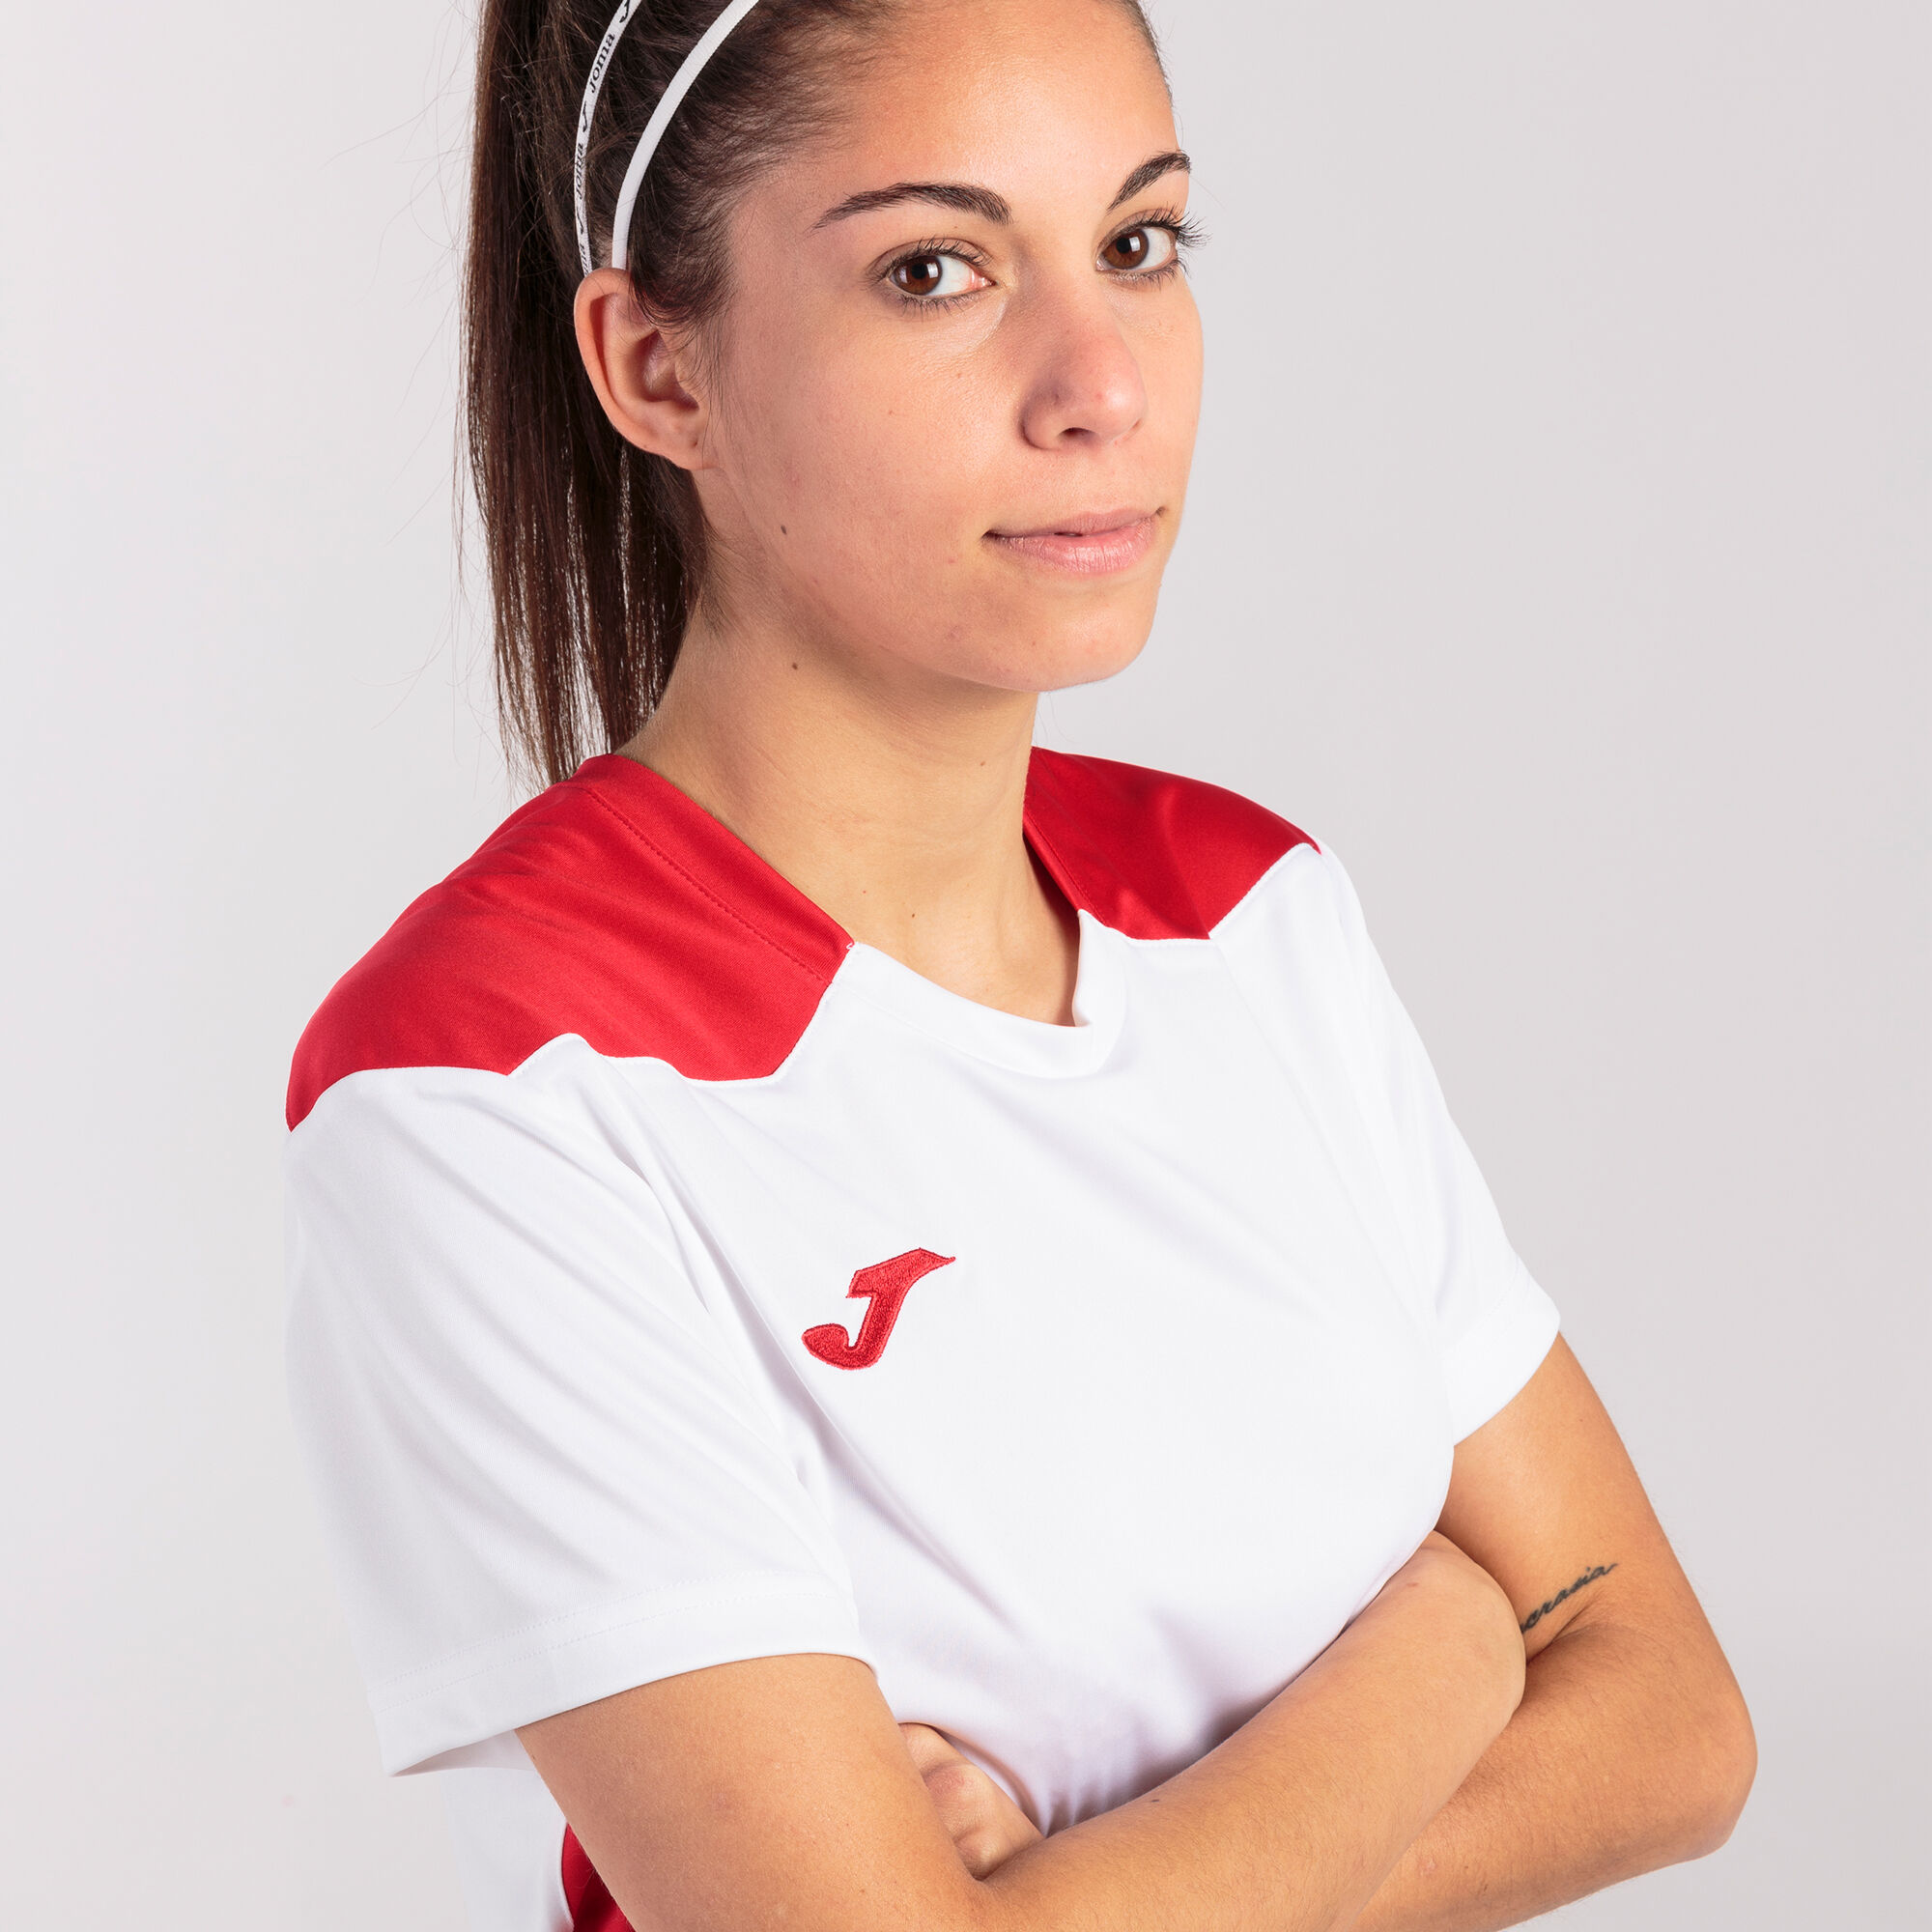 Camiseta manga corta mujer Championship VI blanco rojo